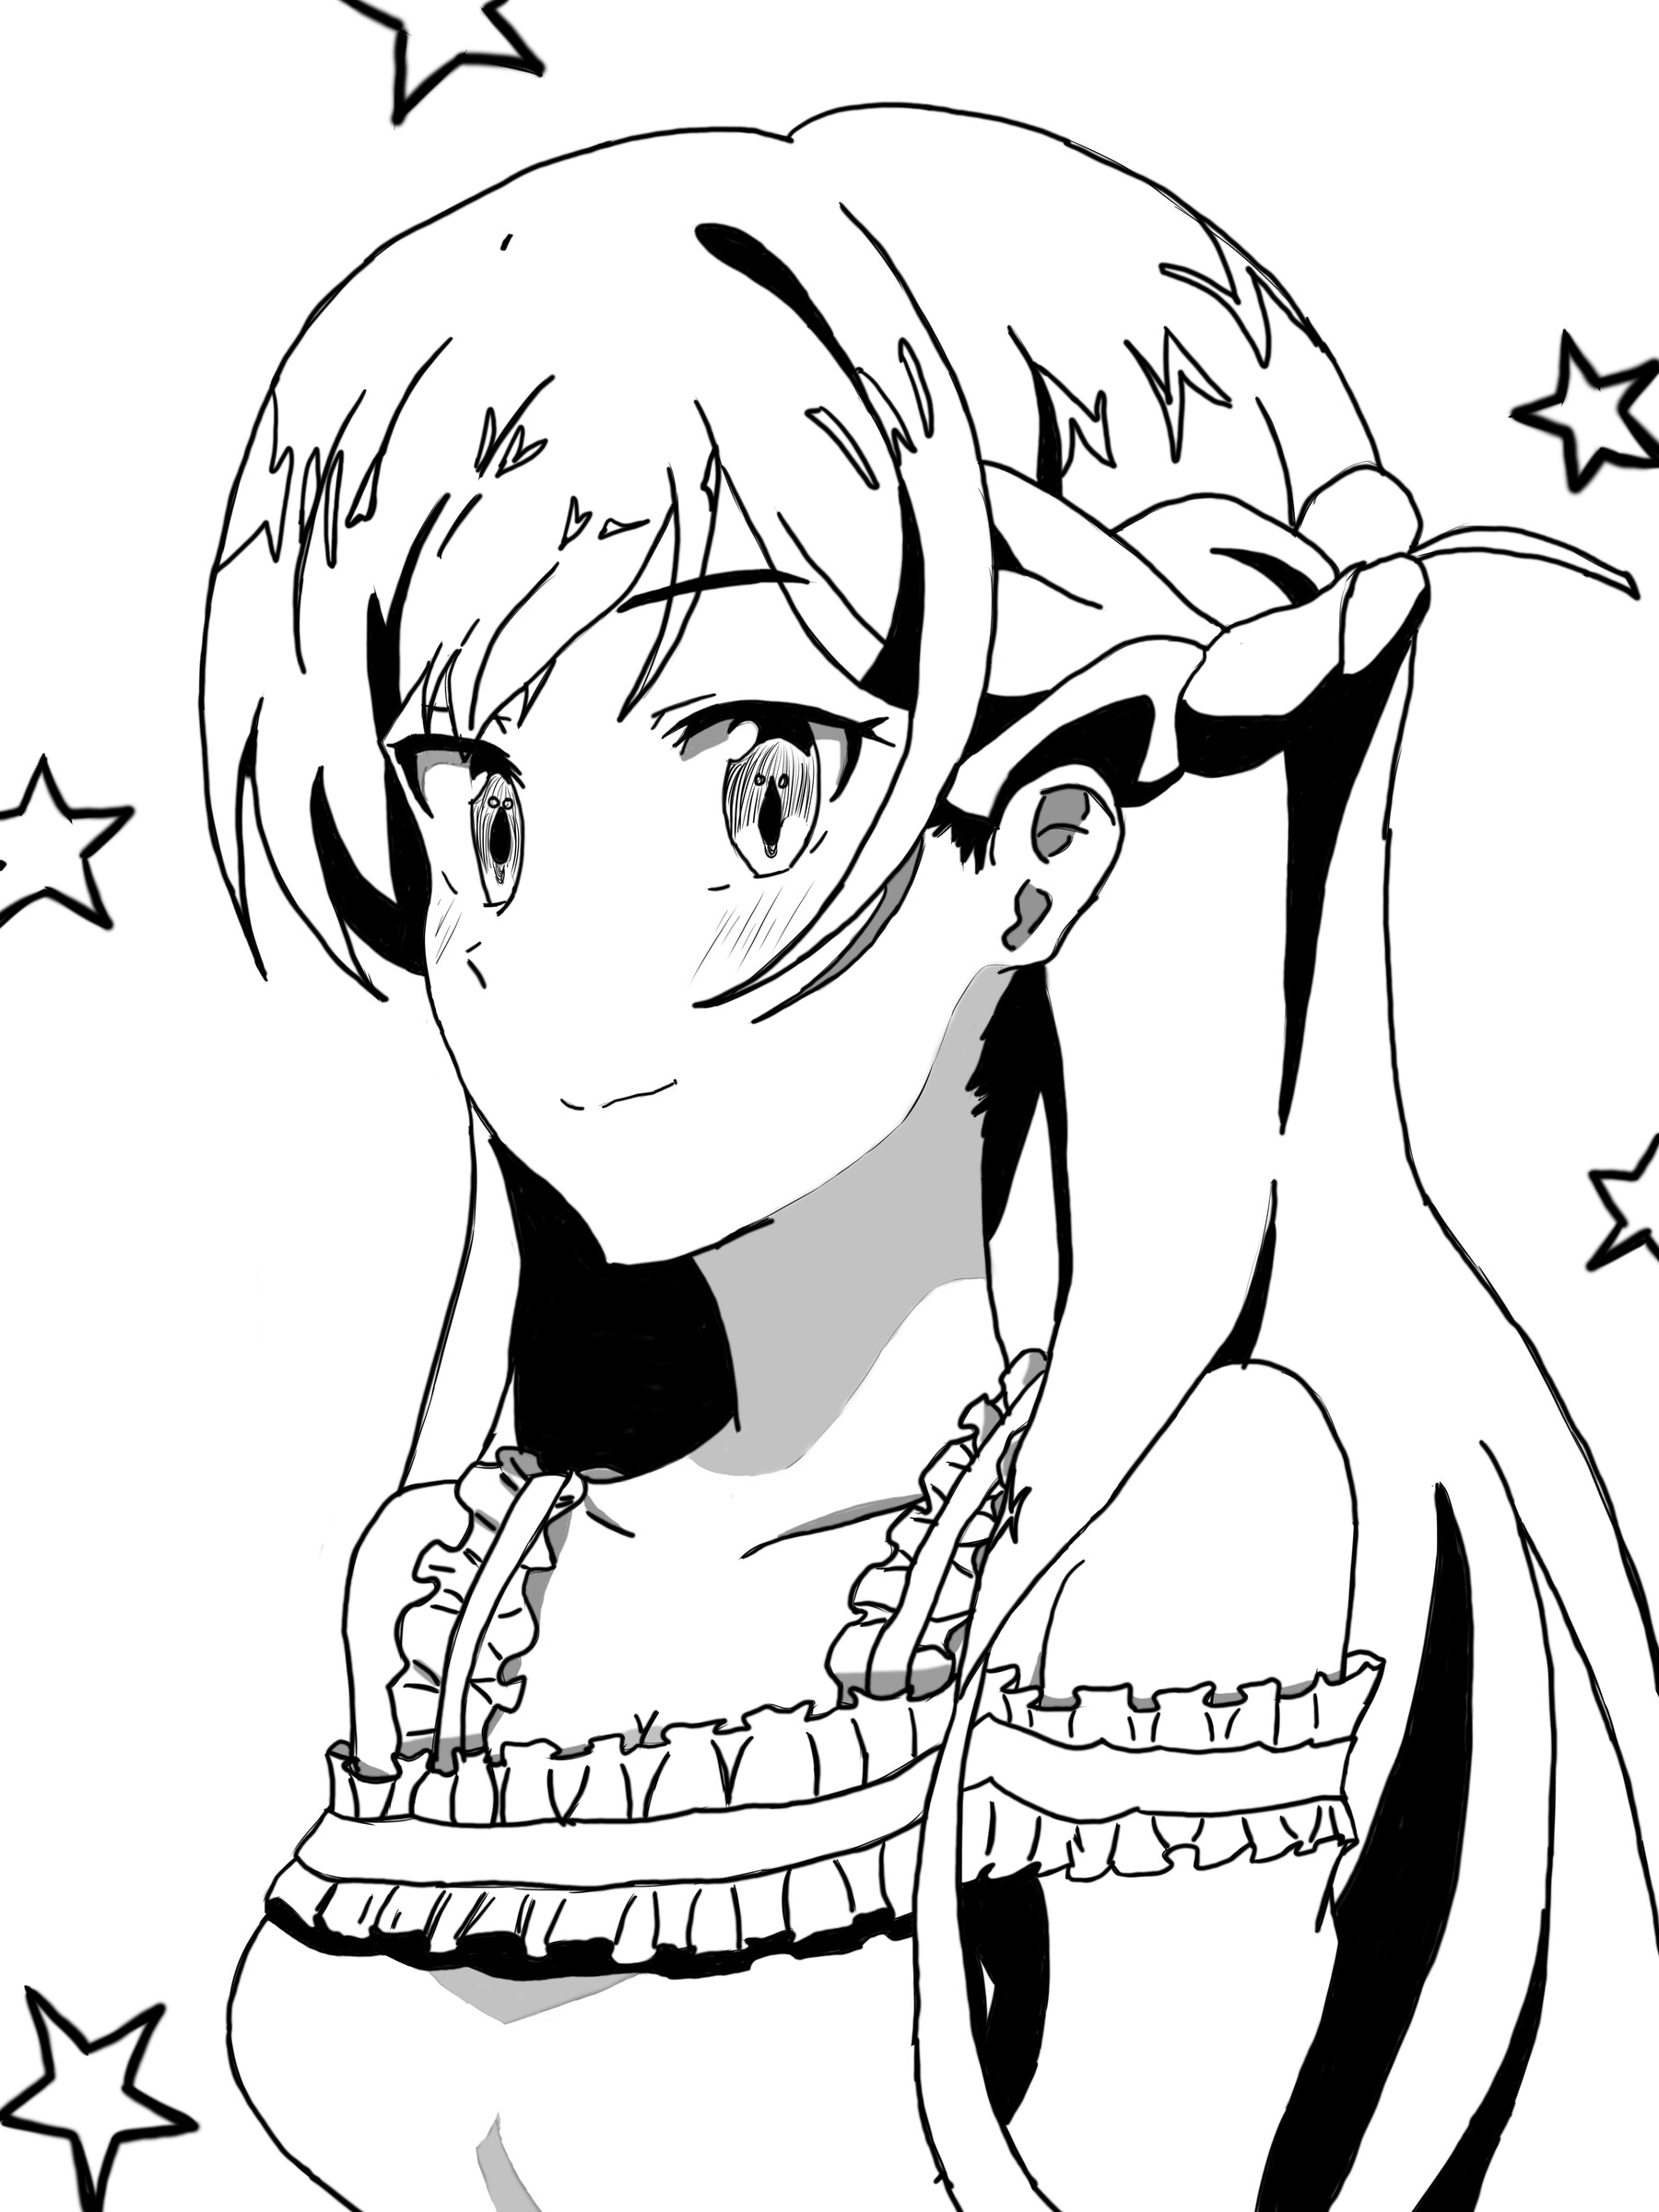 Chizuru Mizuhara | Manga anime girl, Anime girl drawings, Anime girl